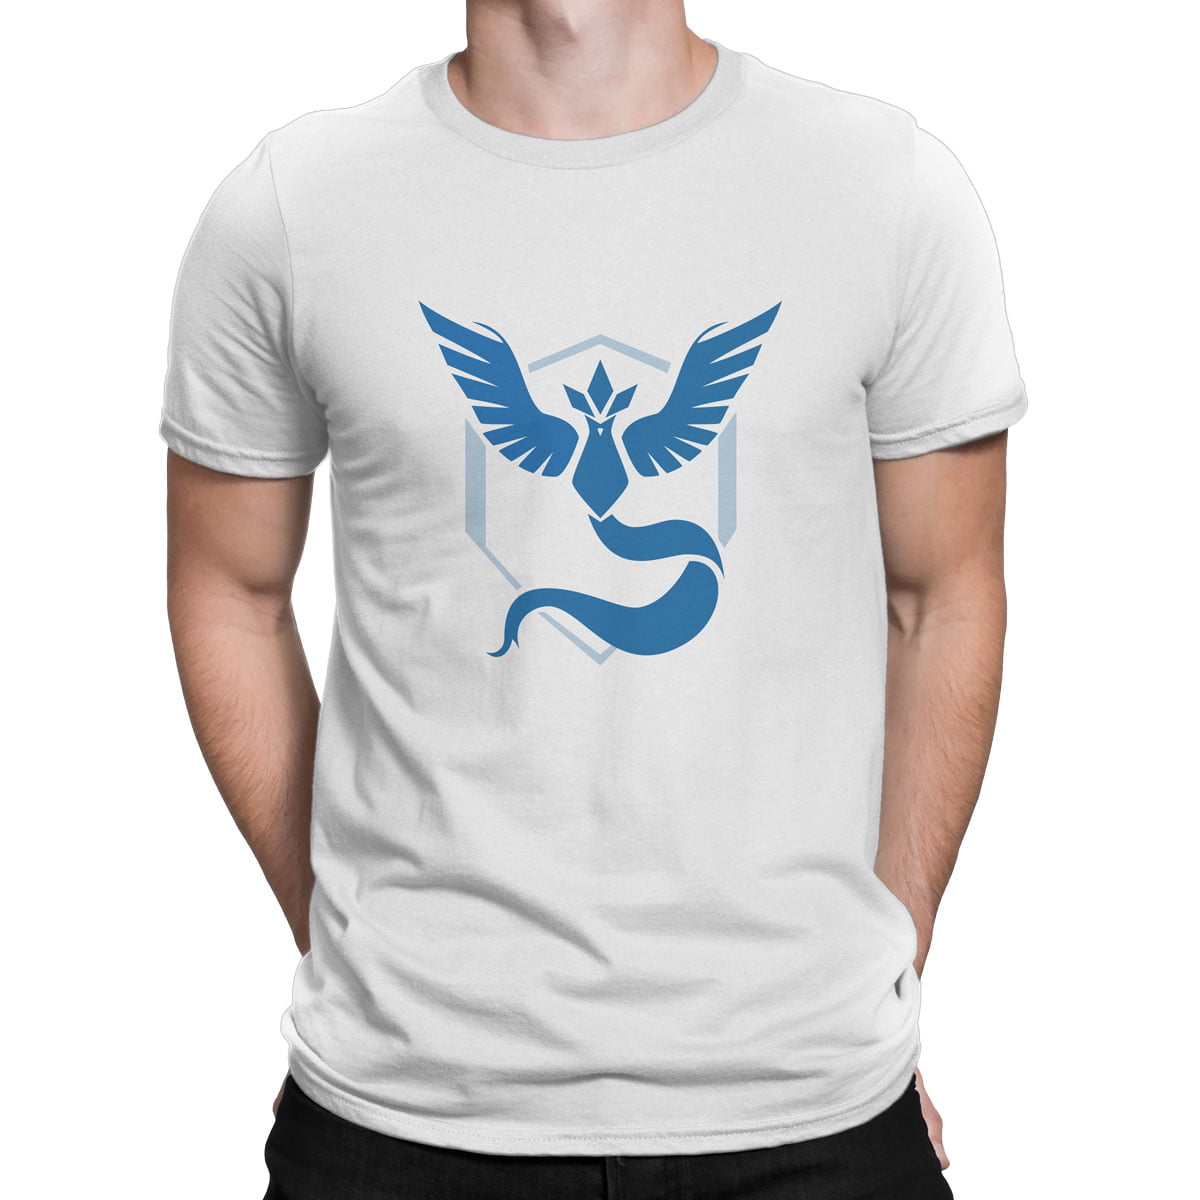 Pokemon go mavi takim mystic tisort erkek b - pokemon go team mystic baskılı erkek t-shirt - figurex